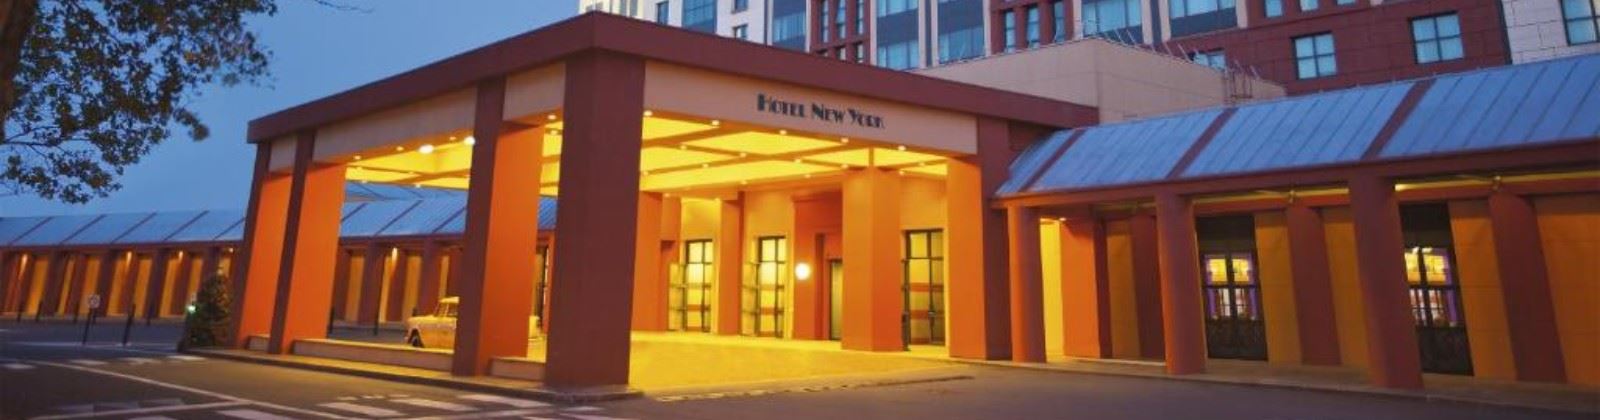 OLEVENE Image - hotel-new-york-olevene-restaurant-seminaire-conference-